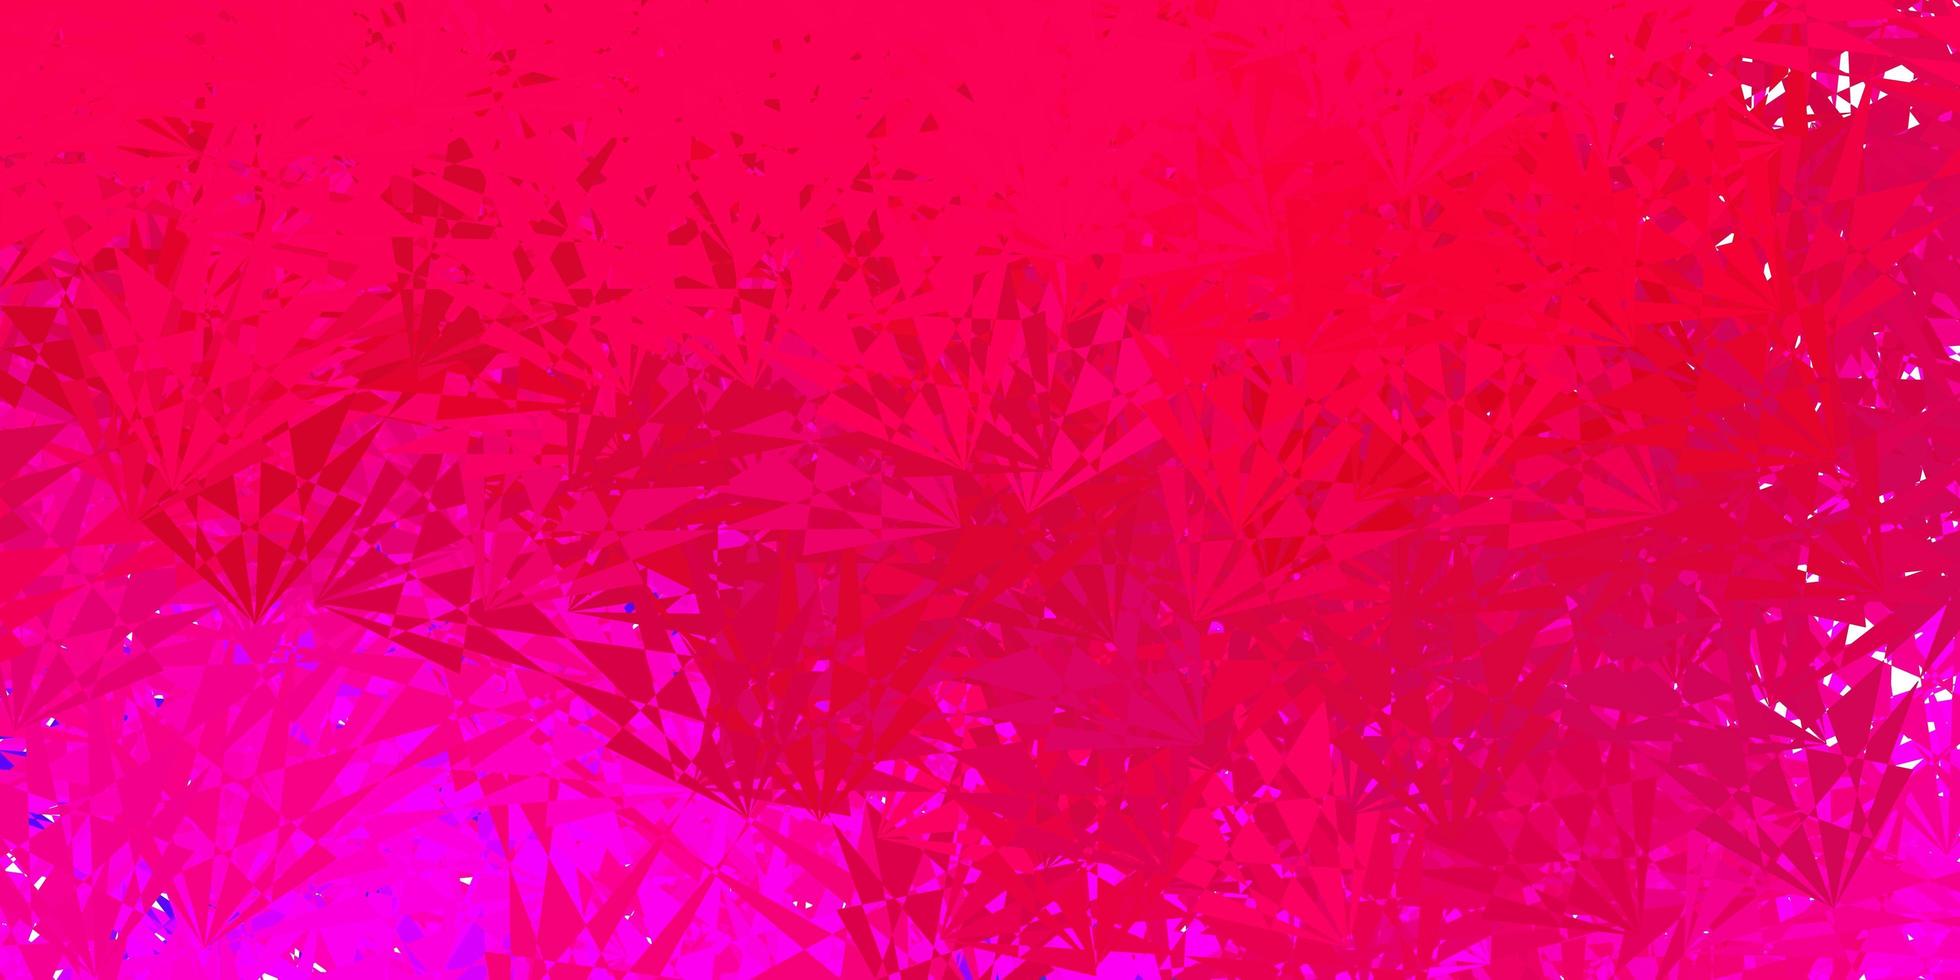 toile de fond de vecteur rose foncé avec des triangles, des lignes.